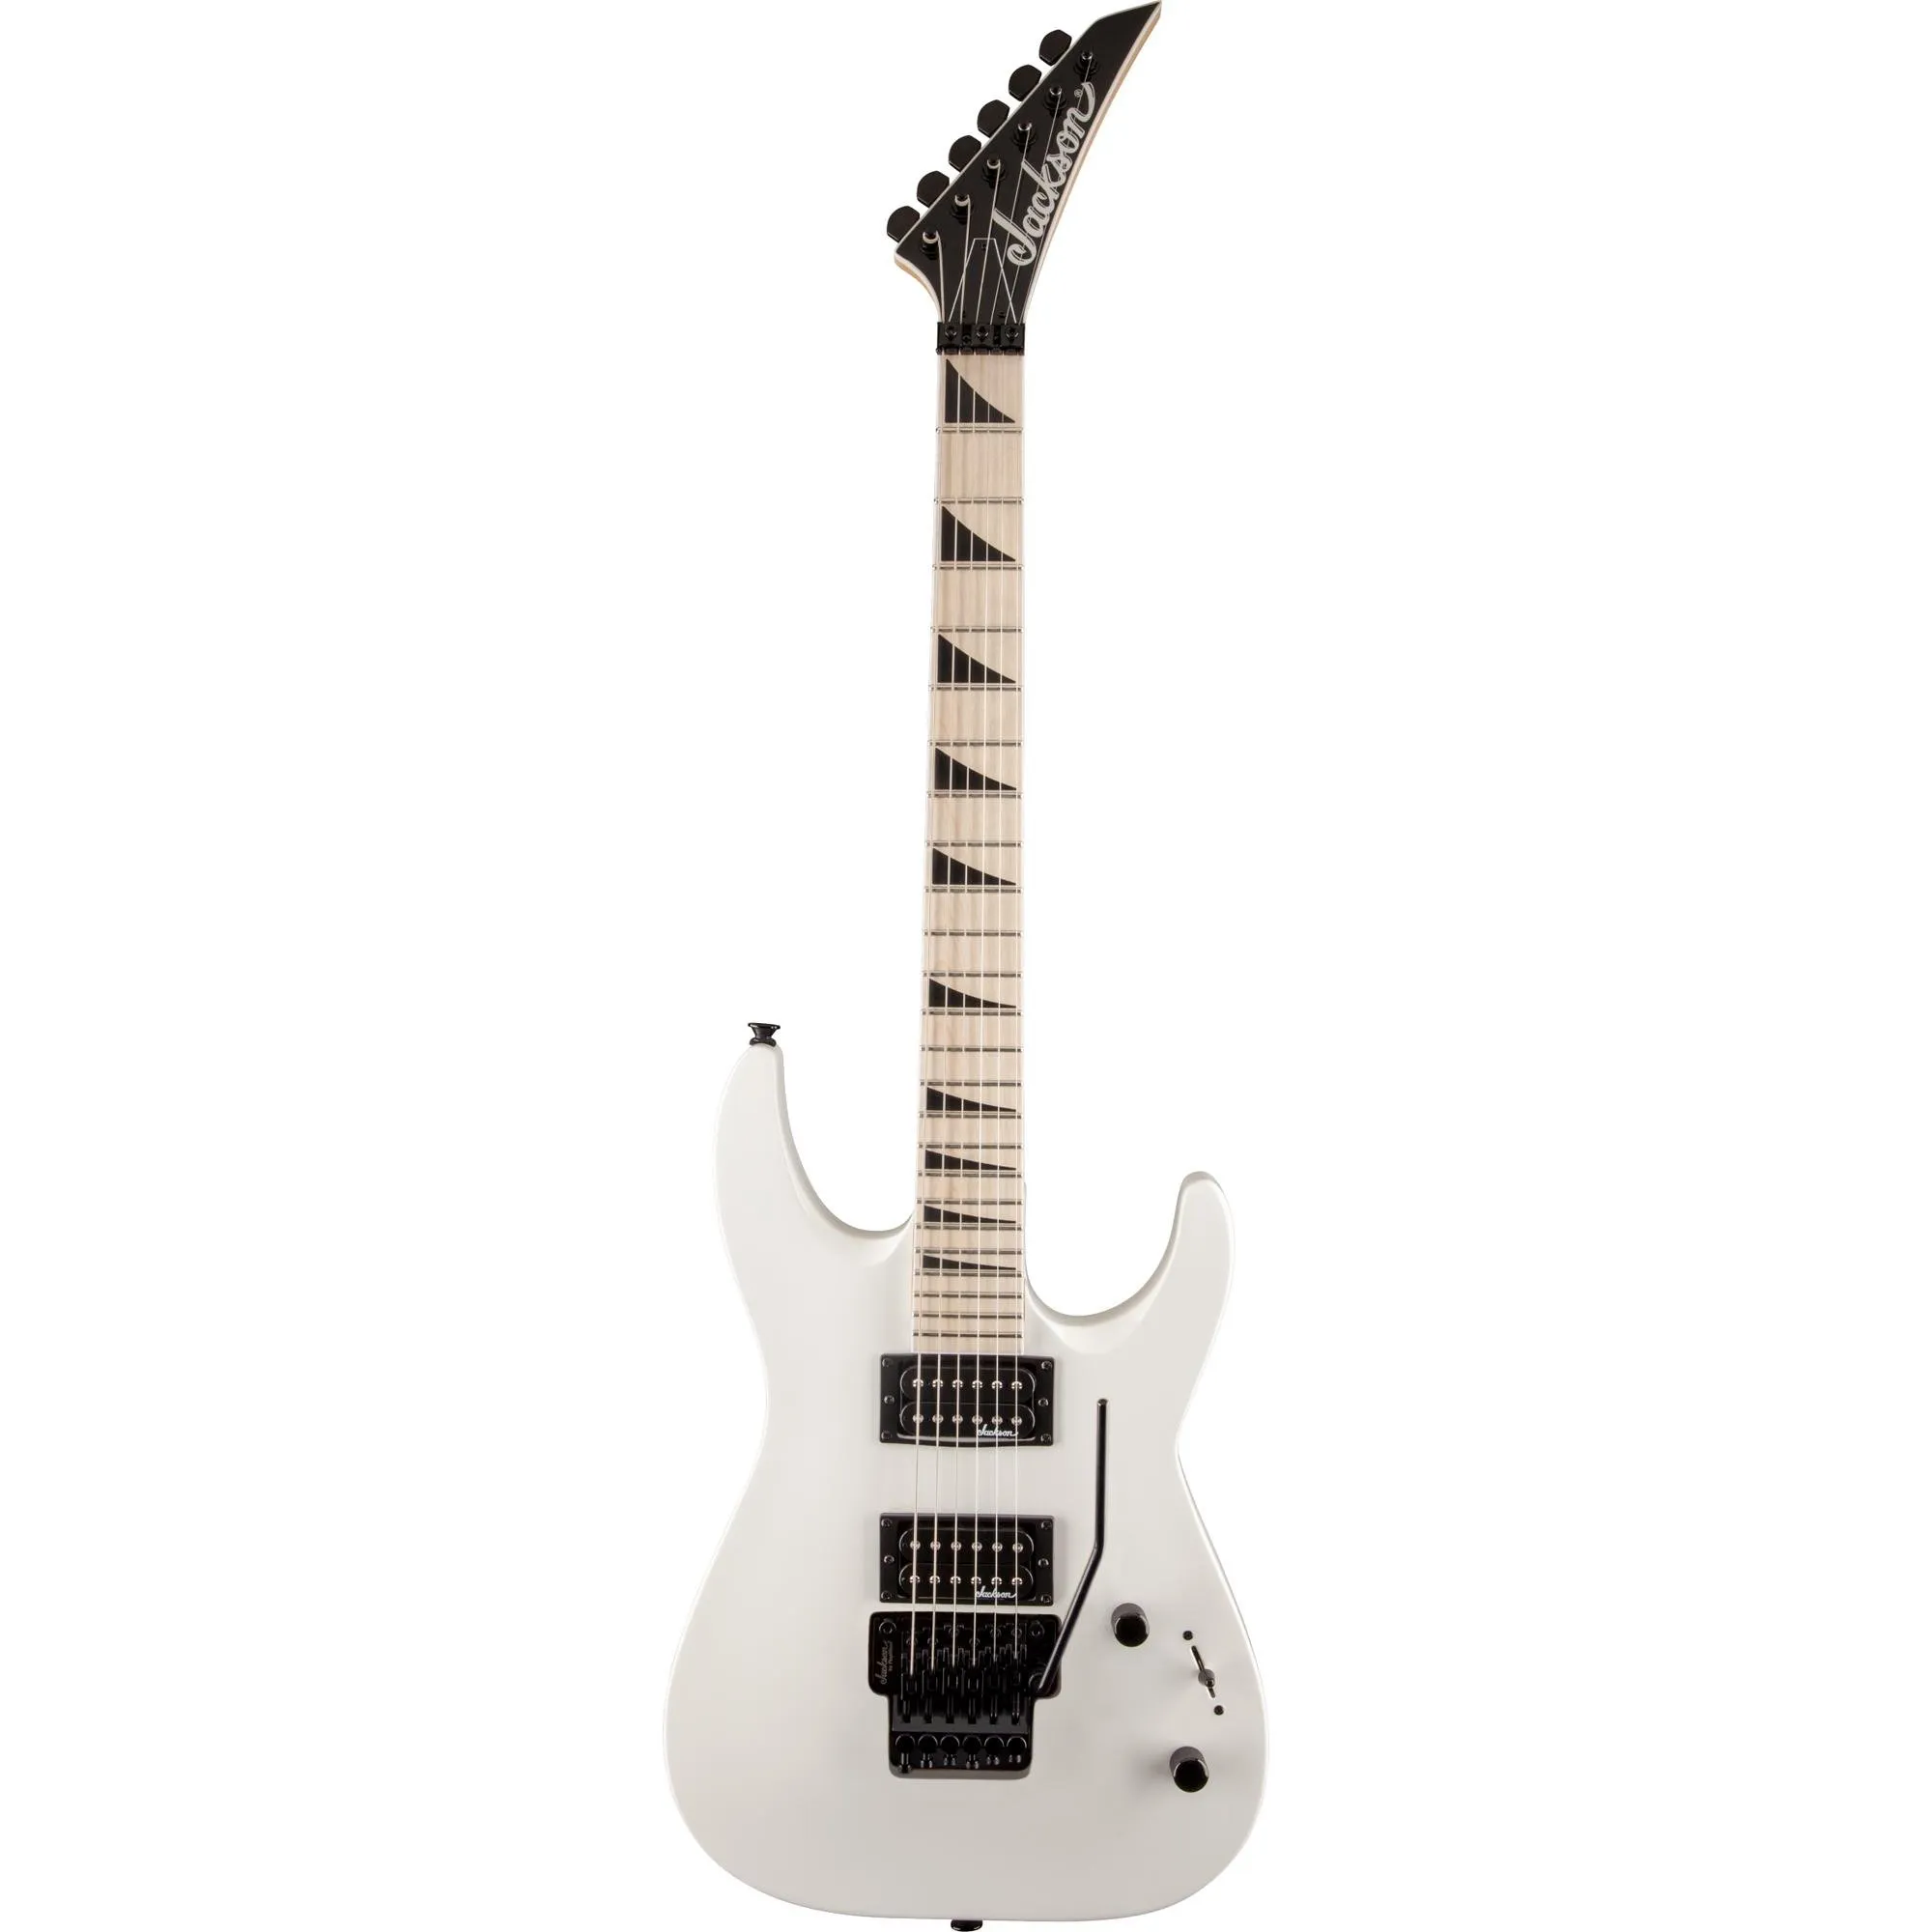 Guitarra Jackson Arch Top JS32 Dinky DKA-M Snow White por 3.439,99 à vista no boleto/pix ou parcele em até 12x sem juros. Compre na loja Mundomax!